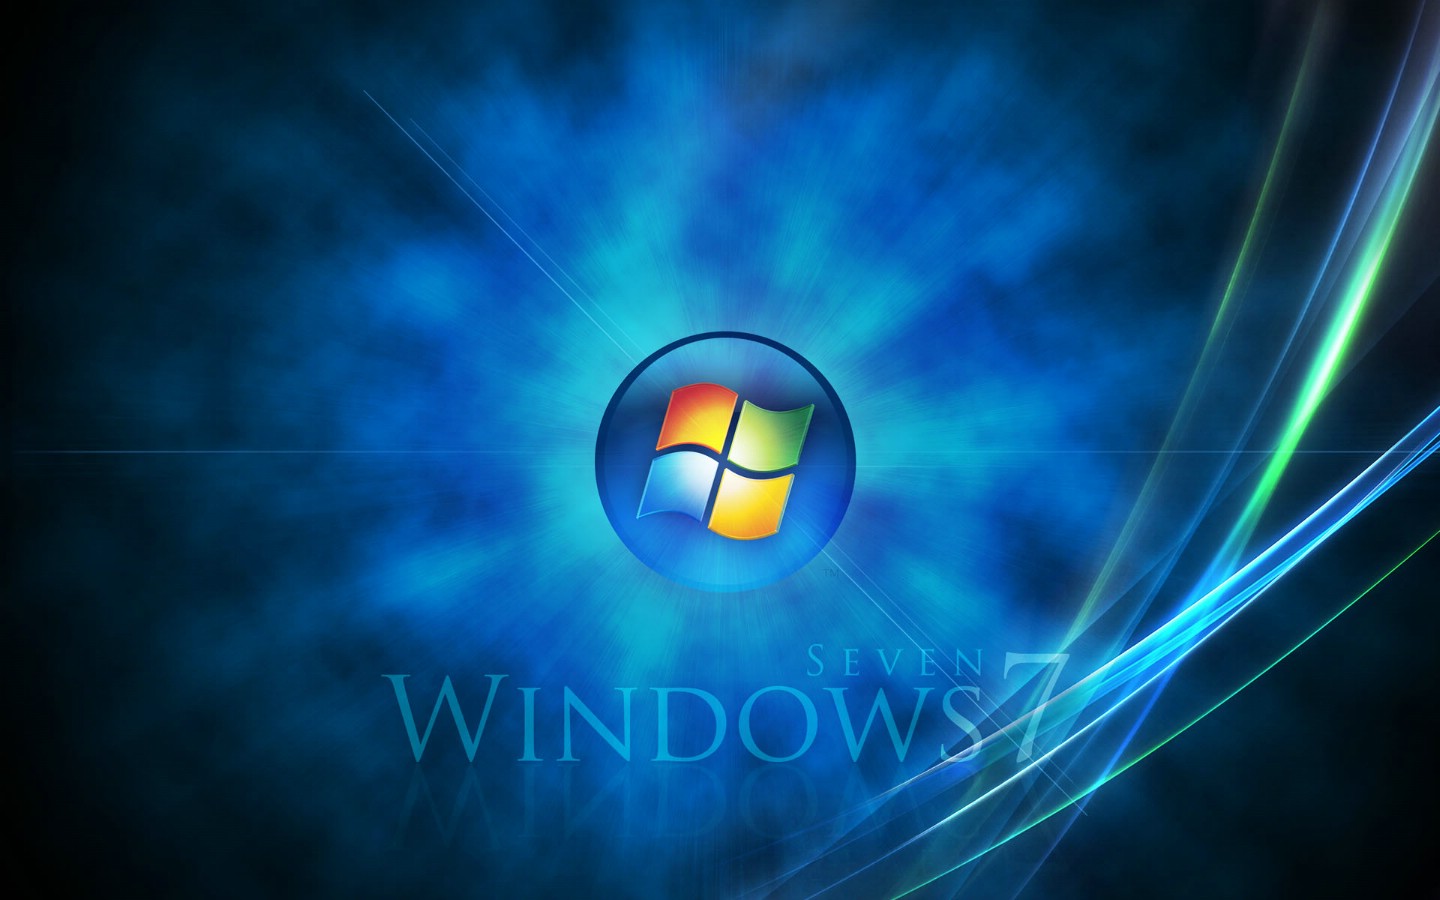 壁纸1440x900Windows 7 正式版壁纸壁纸 Windows 7 正式版壁纸壁纸 Windows 7 正式版壁纸图片 Windows 7 正式版壁纸素材 其他壁纸 其他图库 其他图片素材桌面壁纸